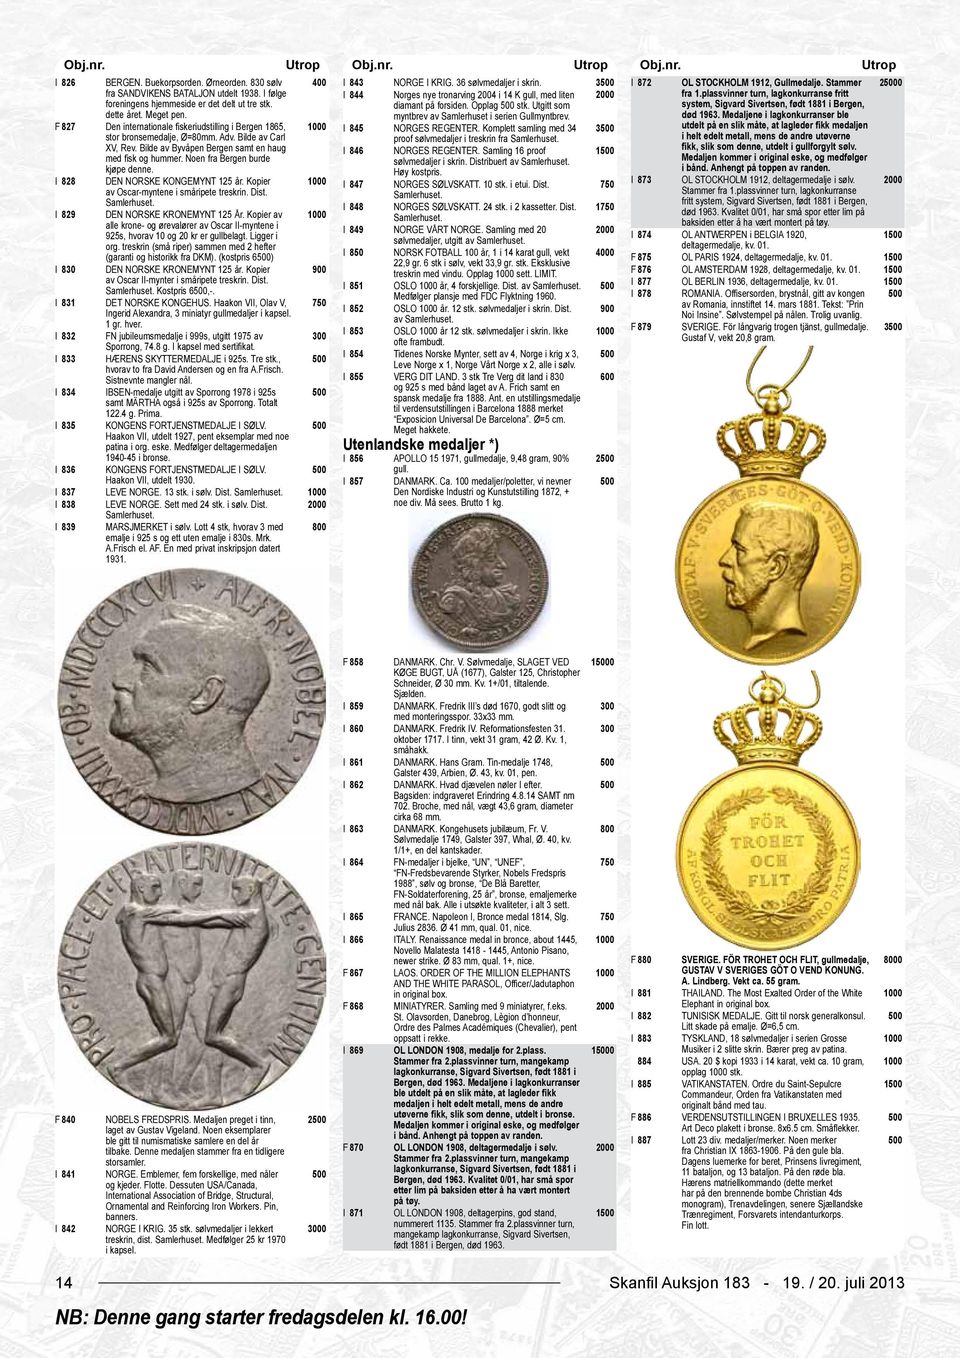 myntbrev av Samlerhuset i serien Gullmyntbrev. F 827 Den internationale fiskeriudstilling i Bergen 1865, stor bronsemedalje, Ø=80mm. Adv. Bilde av Carl XV, Rev.